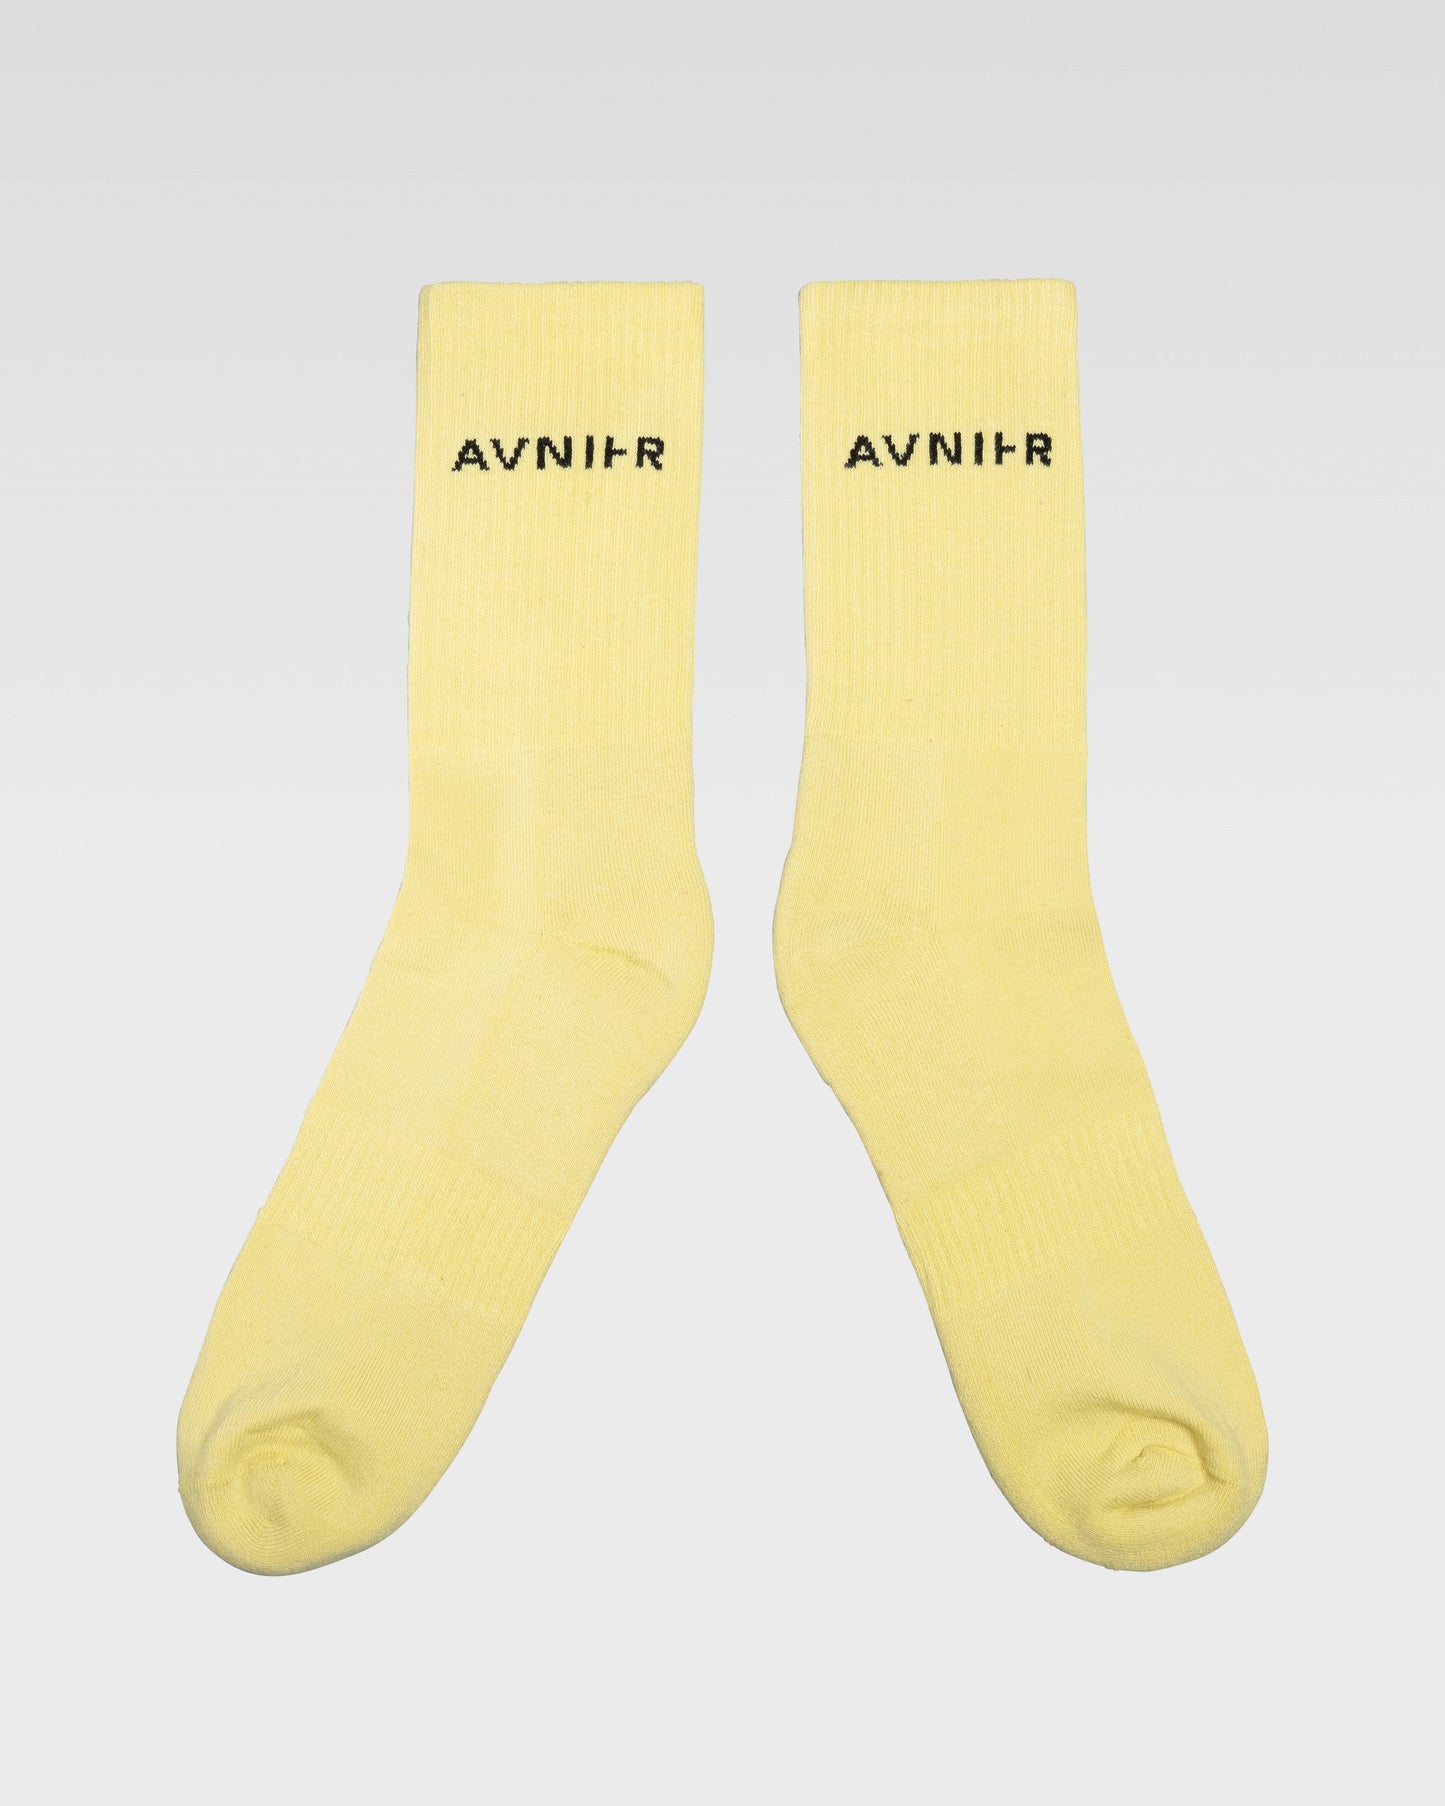 socks-loop-horizontal-jaune-pale-avnier-avnir-2-packshot-face - jaune pâle